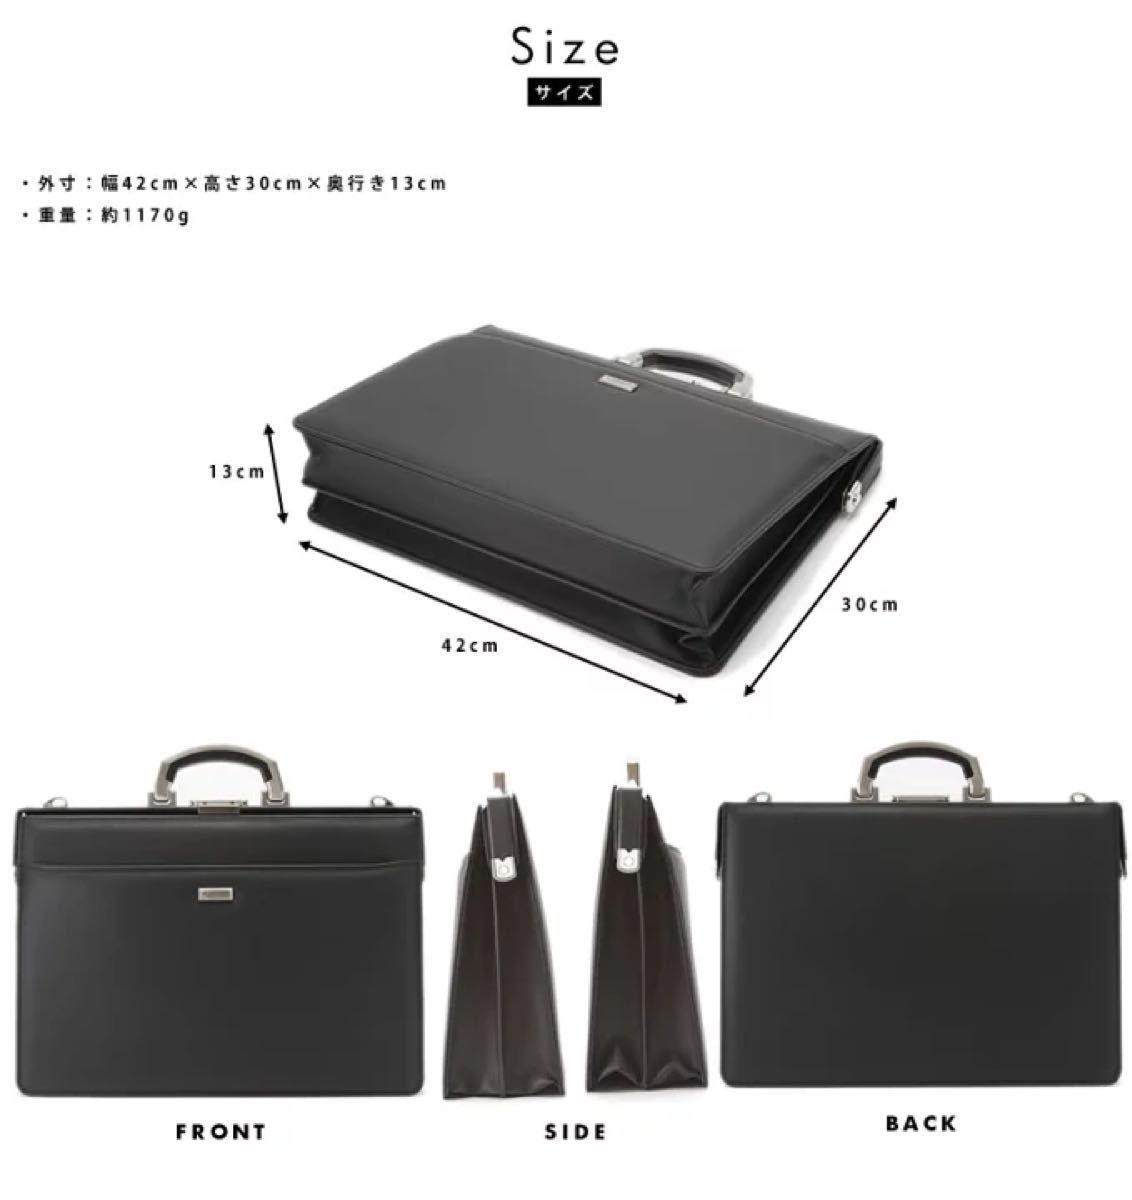 まとめ割引あり ダレスバッグ B4 ビジネスバッグ ダレスバック ビジネスバック ブリーフケース 豊岡製鞄 日本製 22302